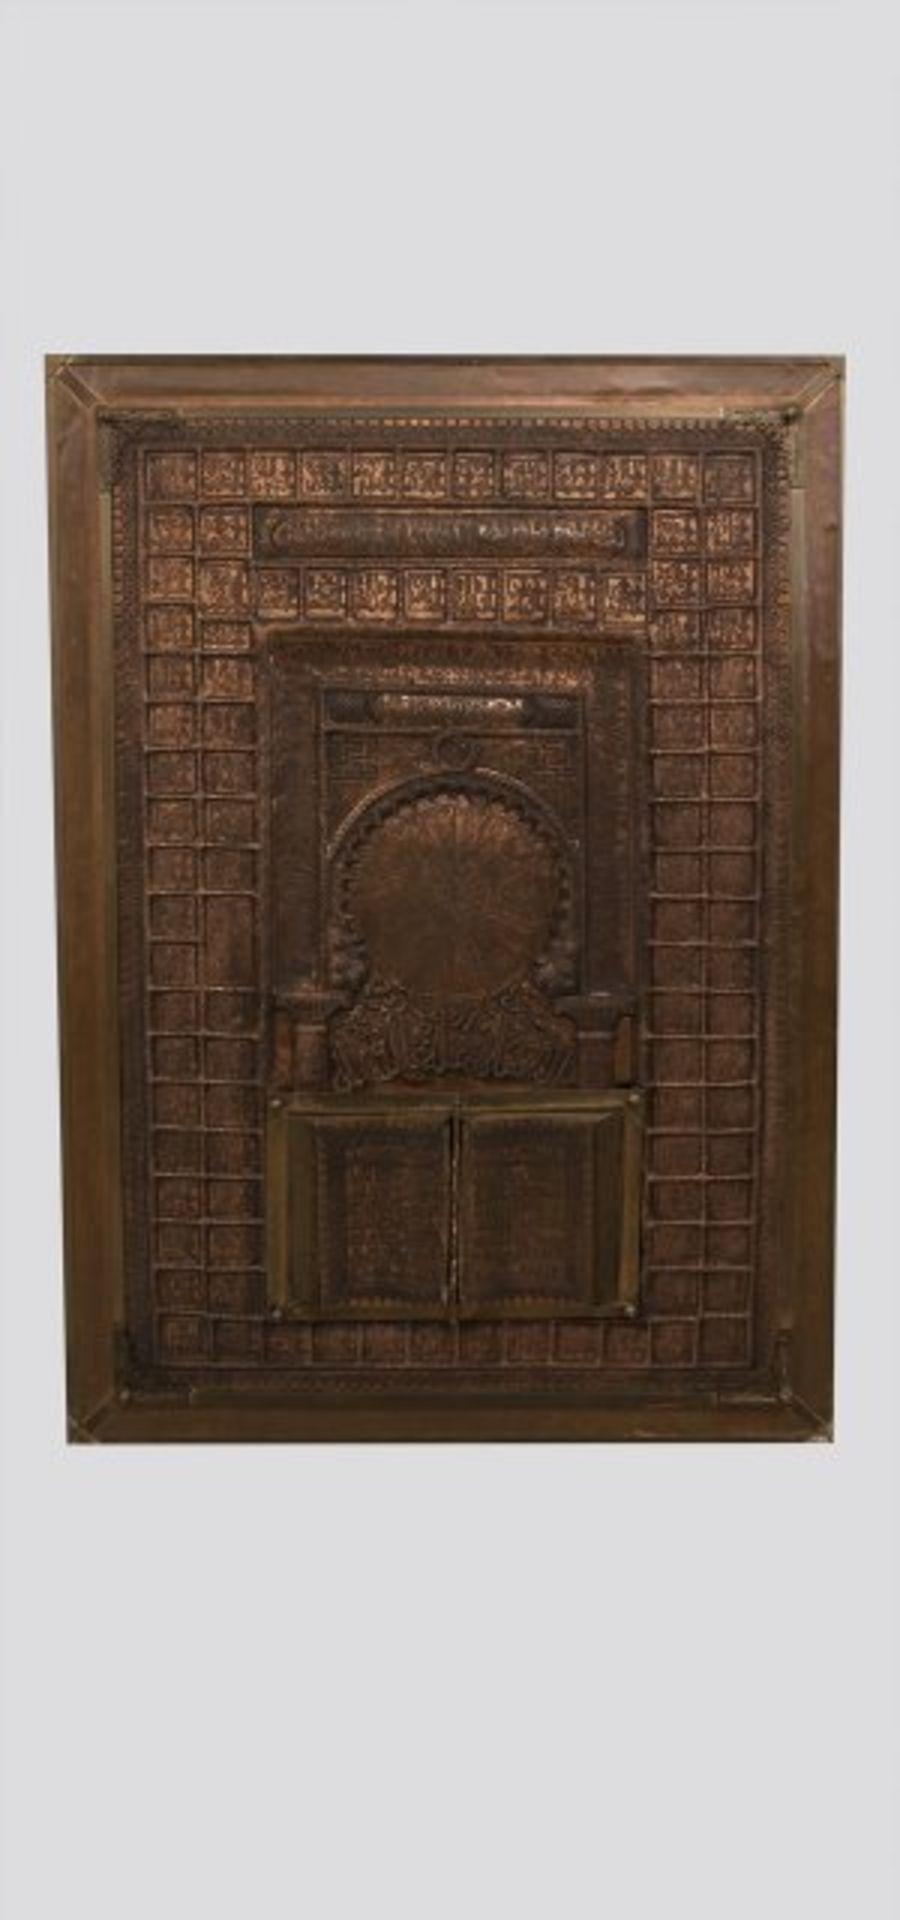 Orientalische Kupferhandarbeit wohl ein Buch und ein Rundfenster darstellend, 136x95 cm;